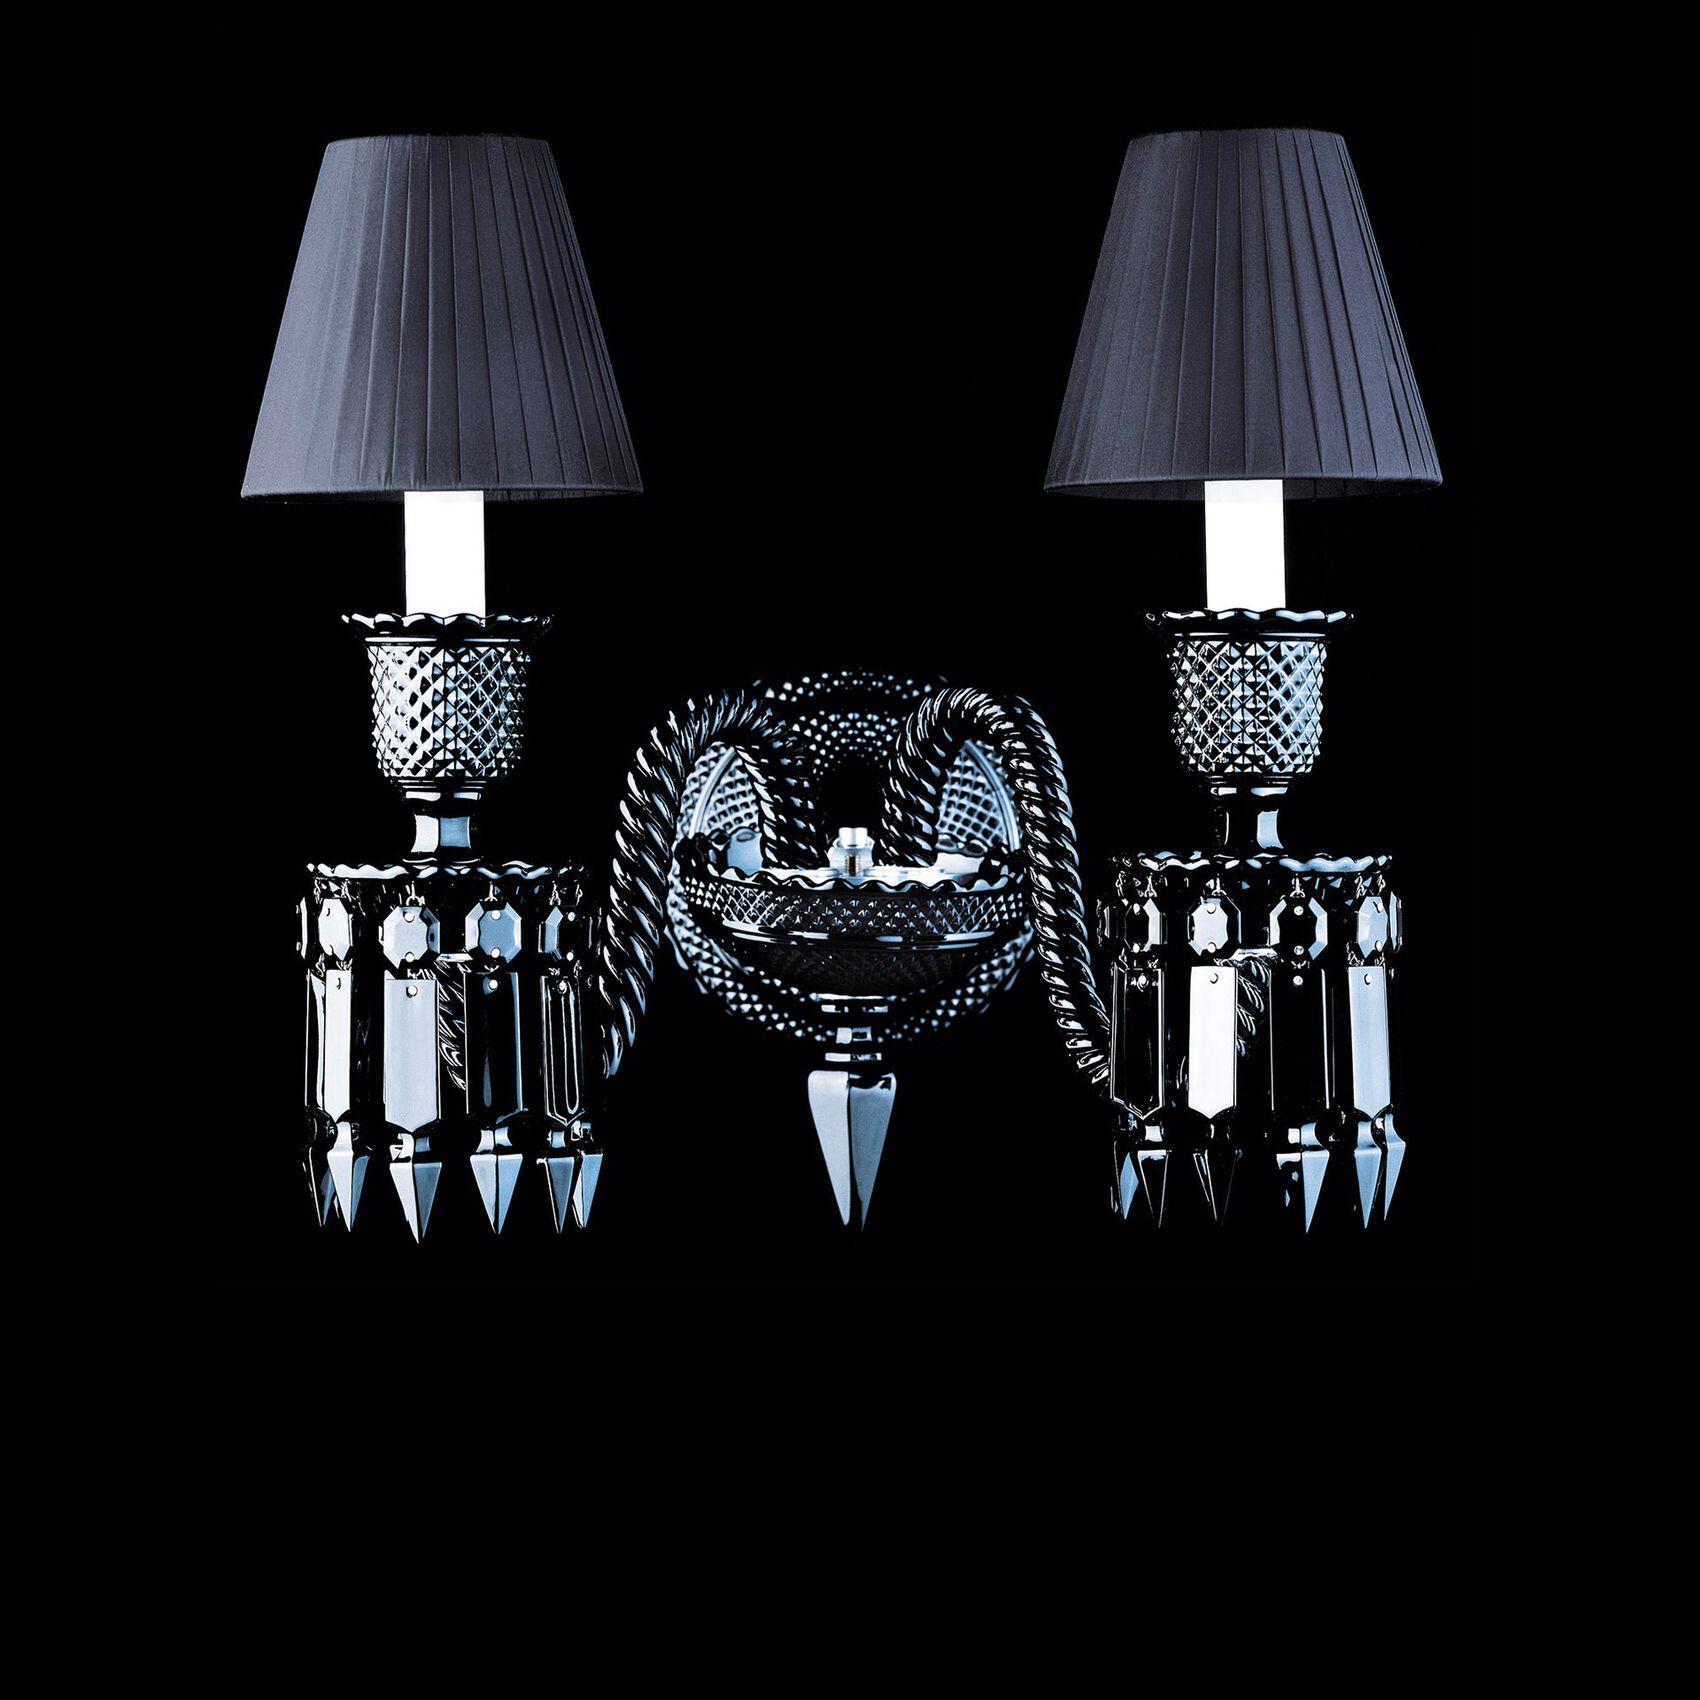 Philippe Starck a relooké la collection Zénith de Baccarat avec son talent habituel, revenant à la tradition du cristal noir, une teinte qui révèle la puissance et la dimension sculpturale de cette création emblématique. Cette applique à deux